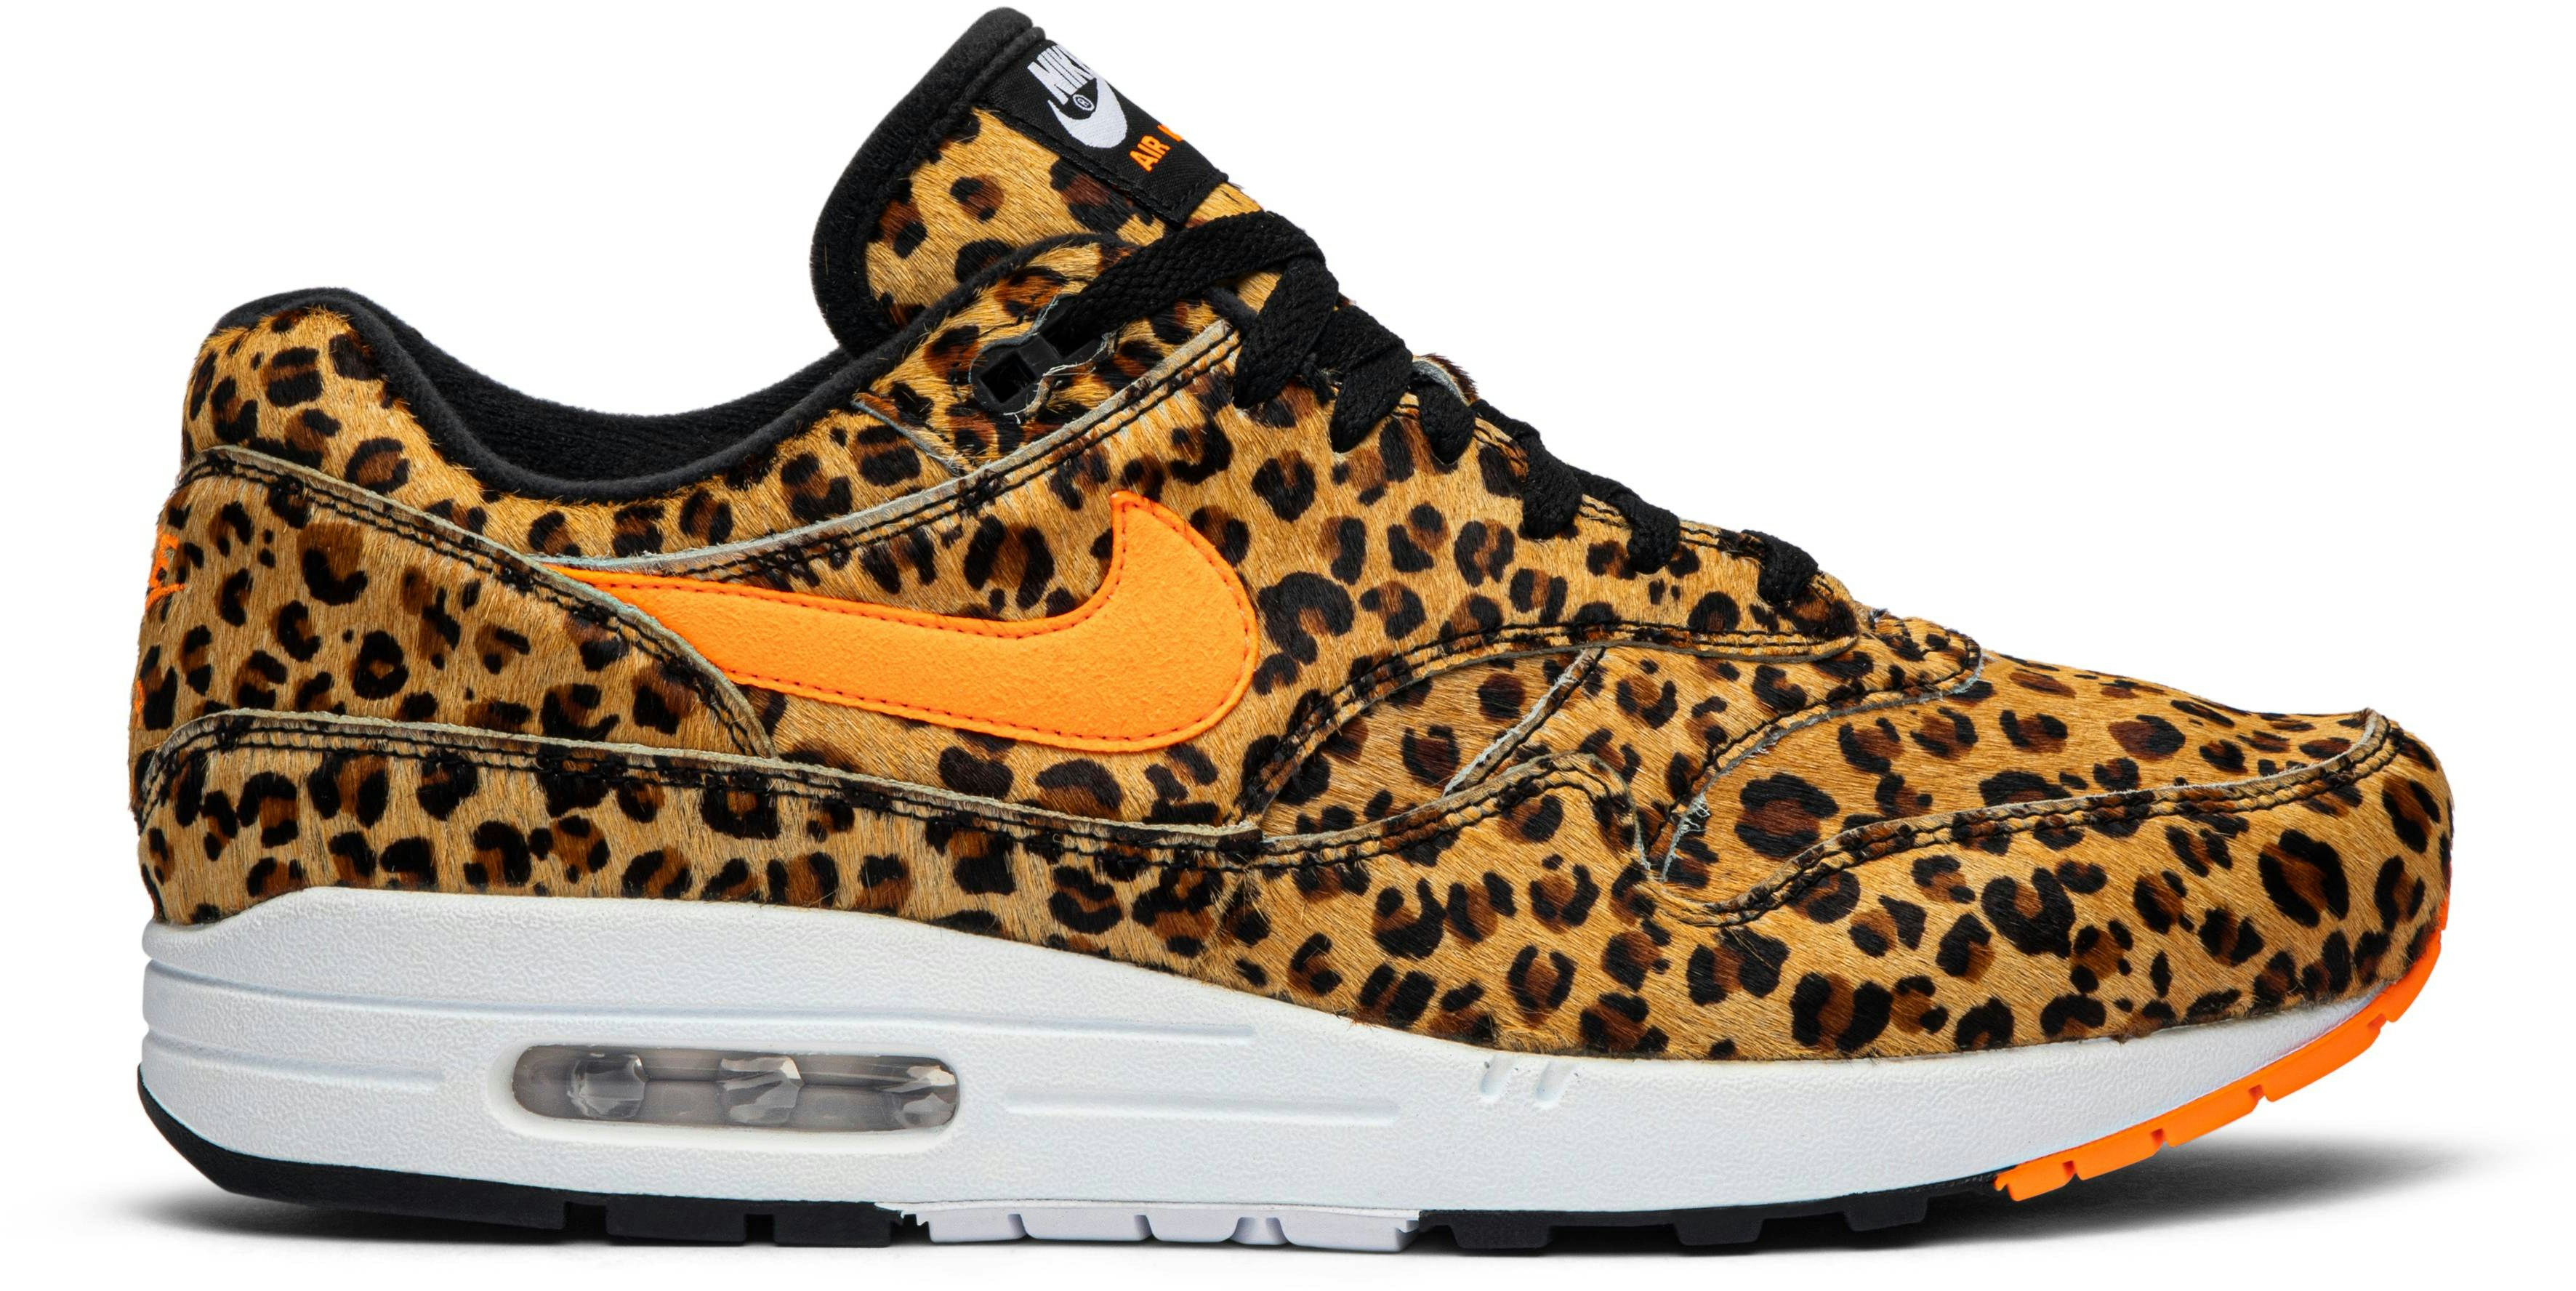 atmos x Nike Air Max 1 DLX 'Animal Pack ‑ Leopard'